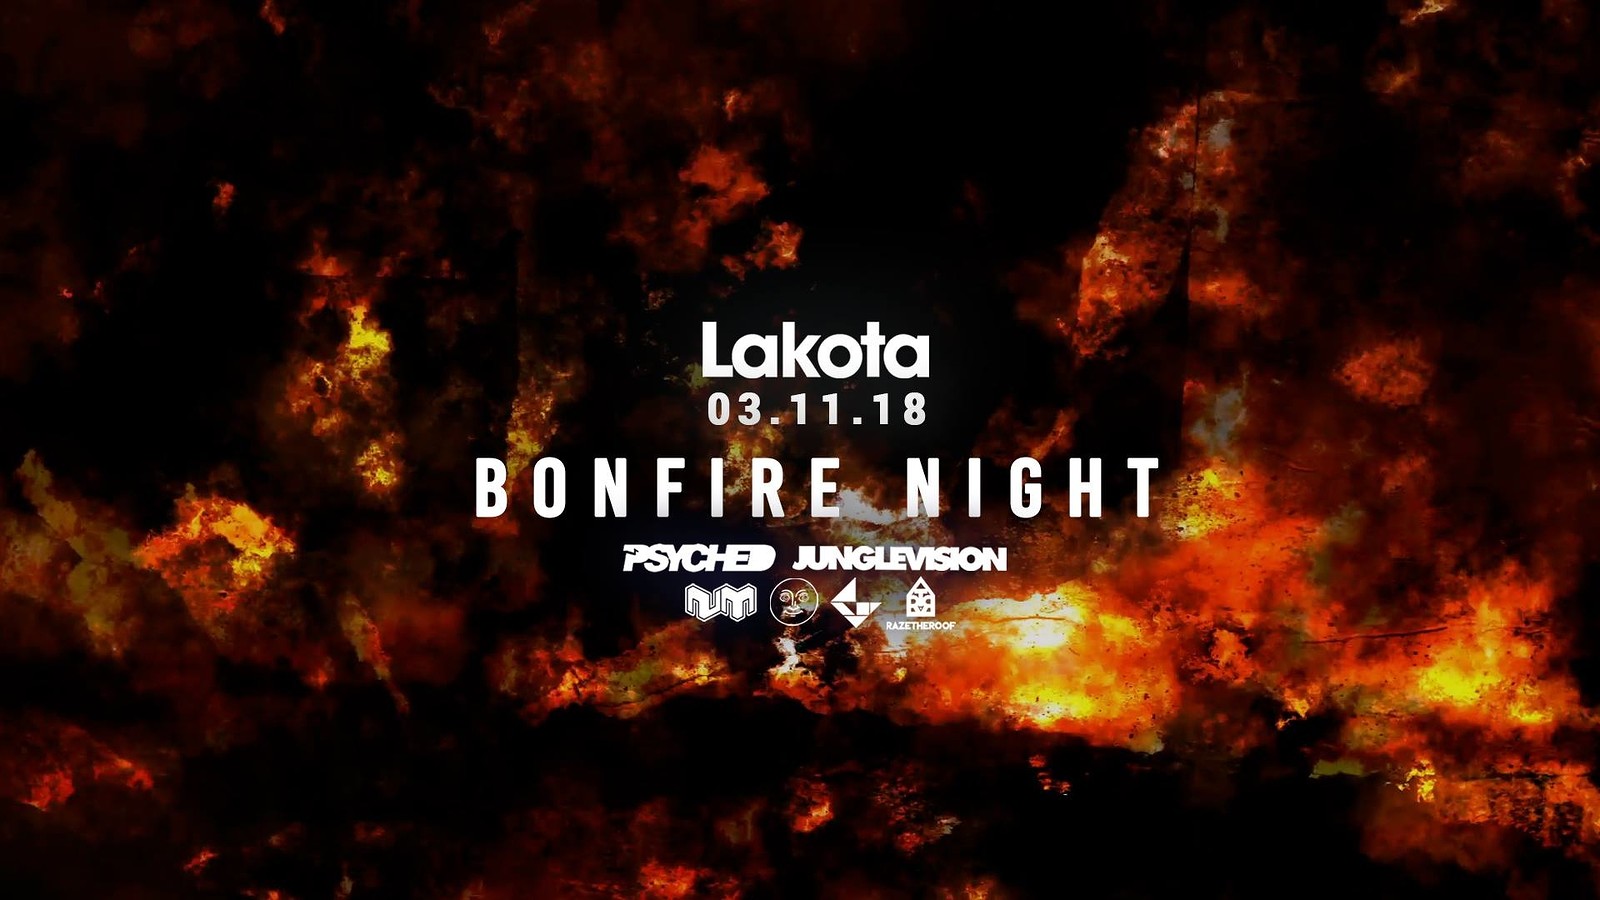 Lakota's Bonfire Night at Lakota